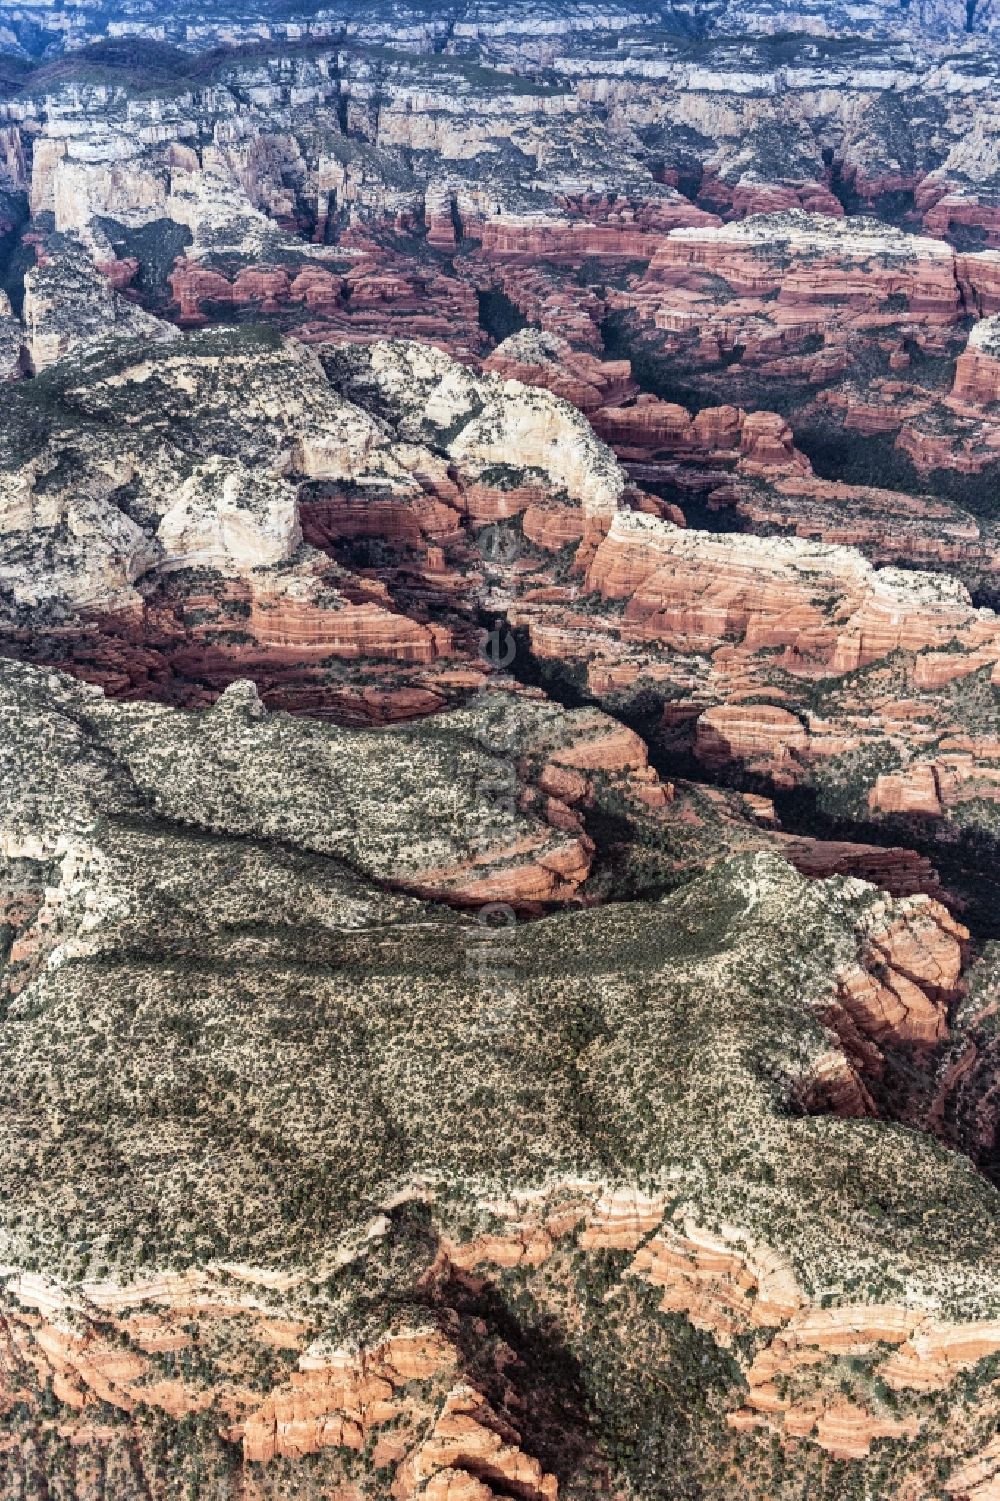 Luftbild Sedona - Von Bergen umsäumte Tallandschaft in Sedona in Arizona, USA